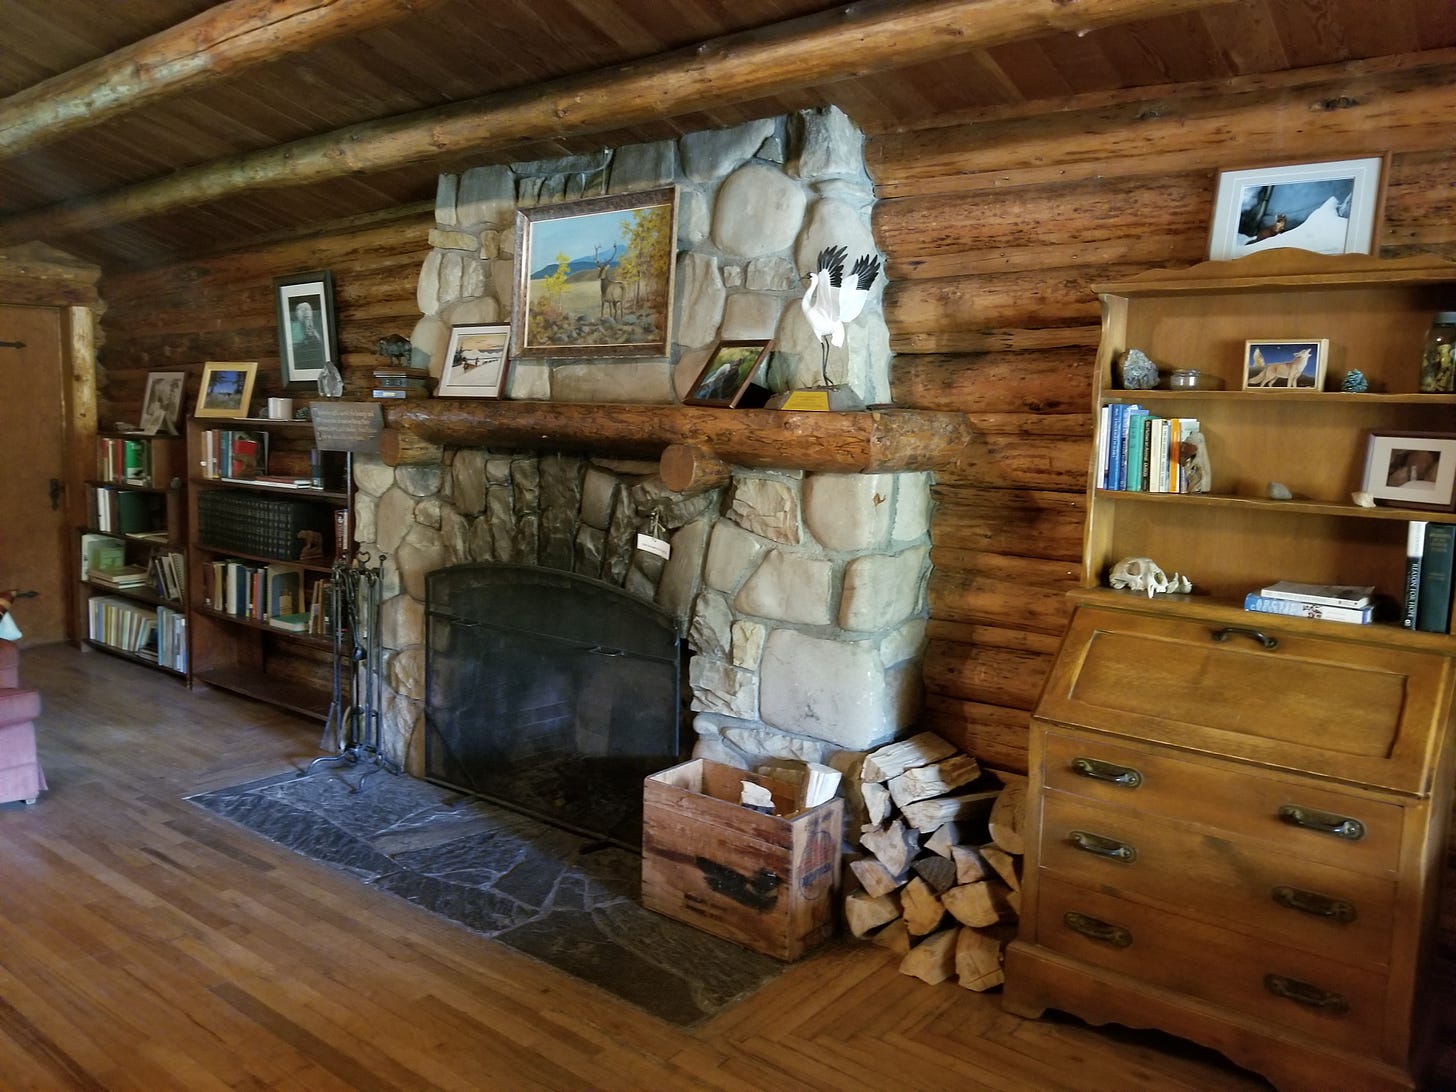 stone fireplace in log cabin, framed by bookshelves